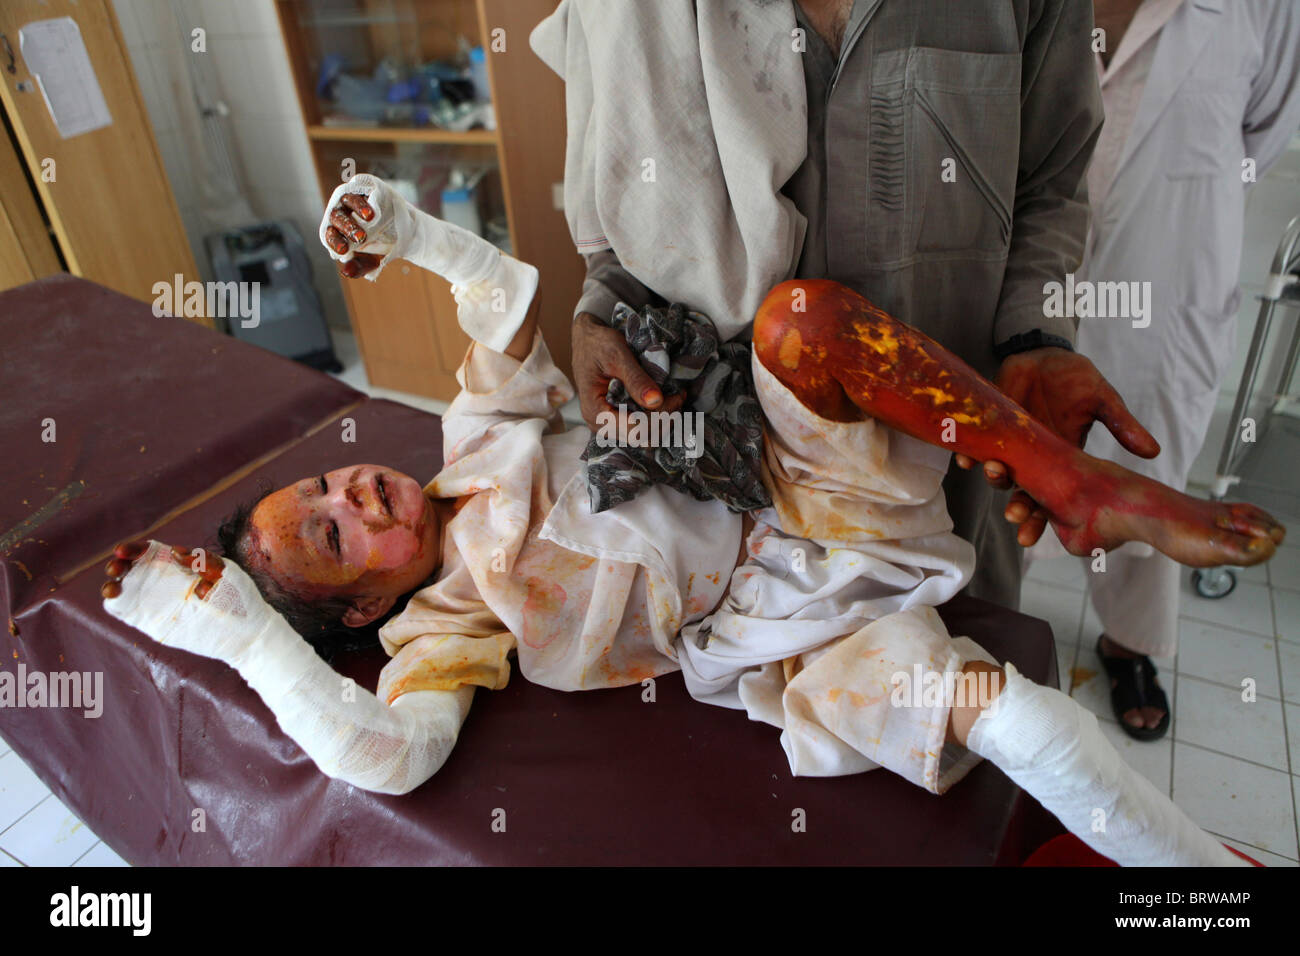 Las víctimas de quemaduras de una IED atentado en Afganistán Foto de stock